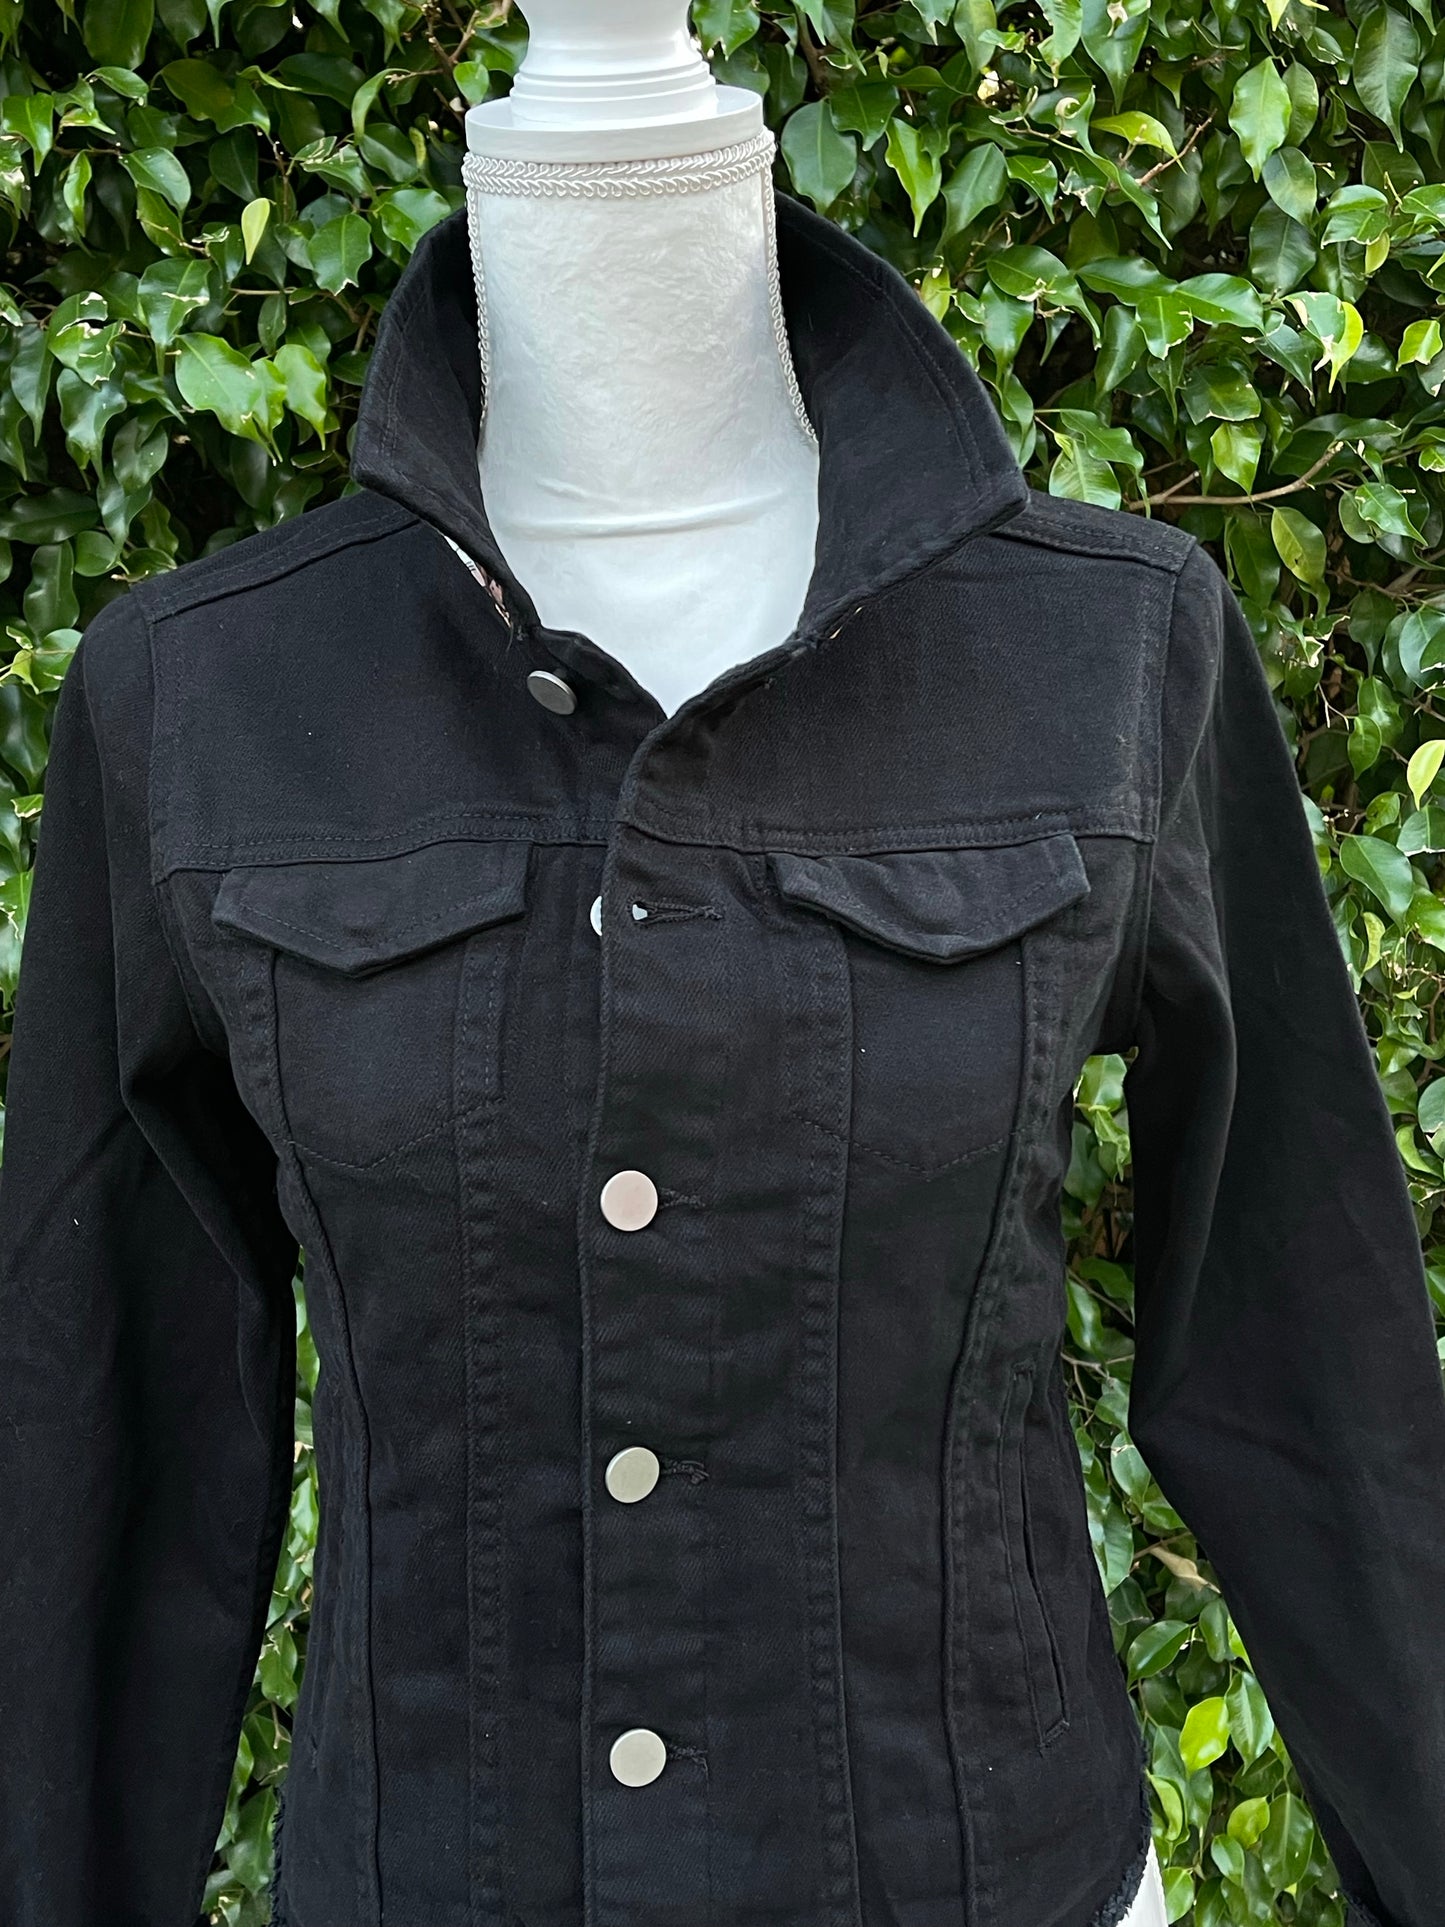 The Black Denim Jacket / Designer Horse with Straps